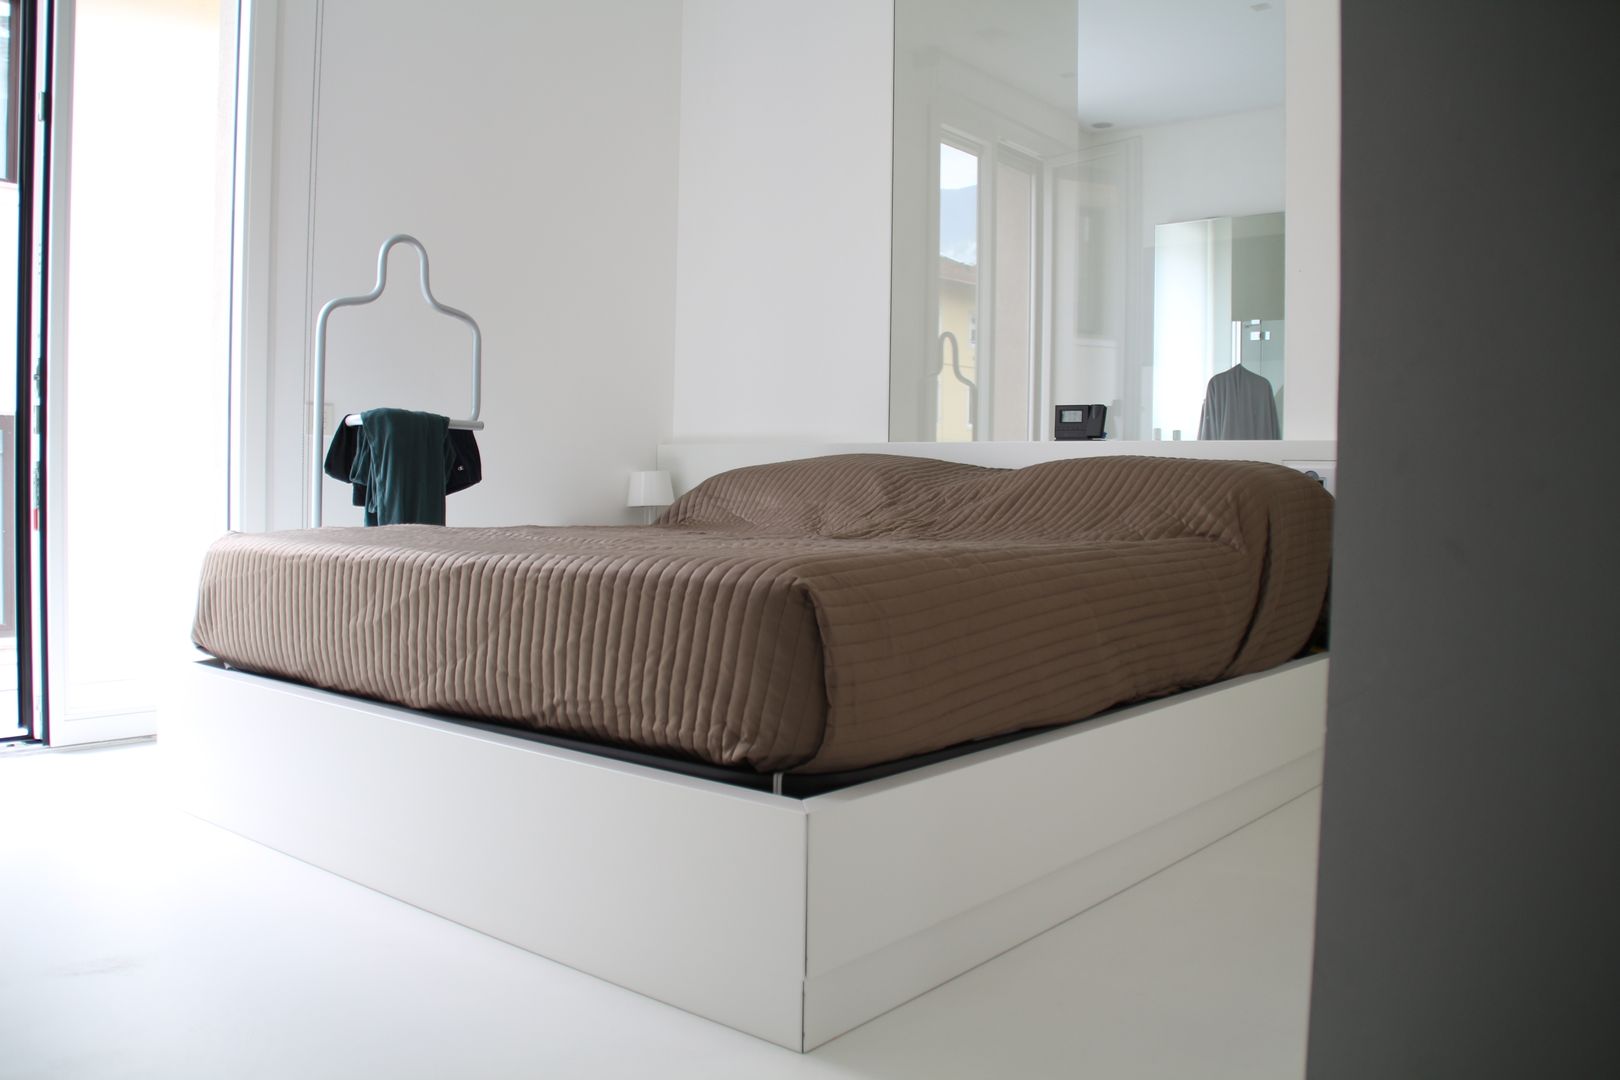 Minisuite Serenella Pari design Camera da letto minimalista